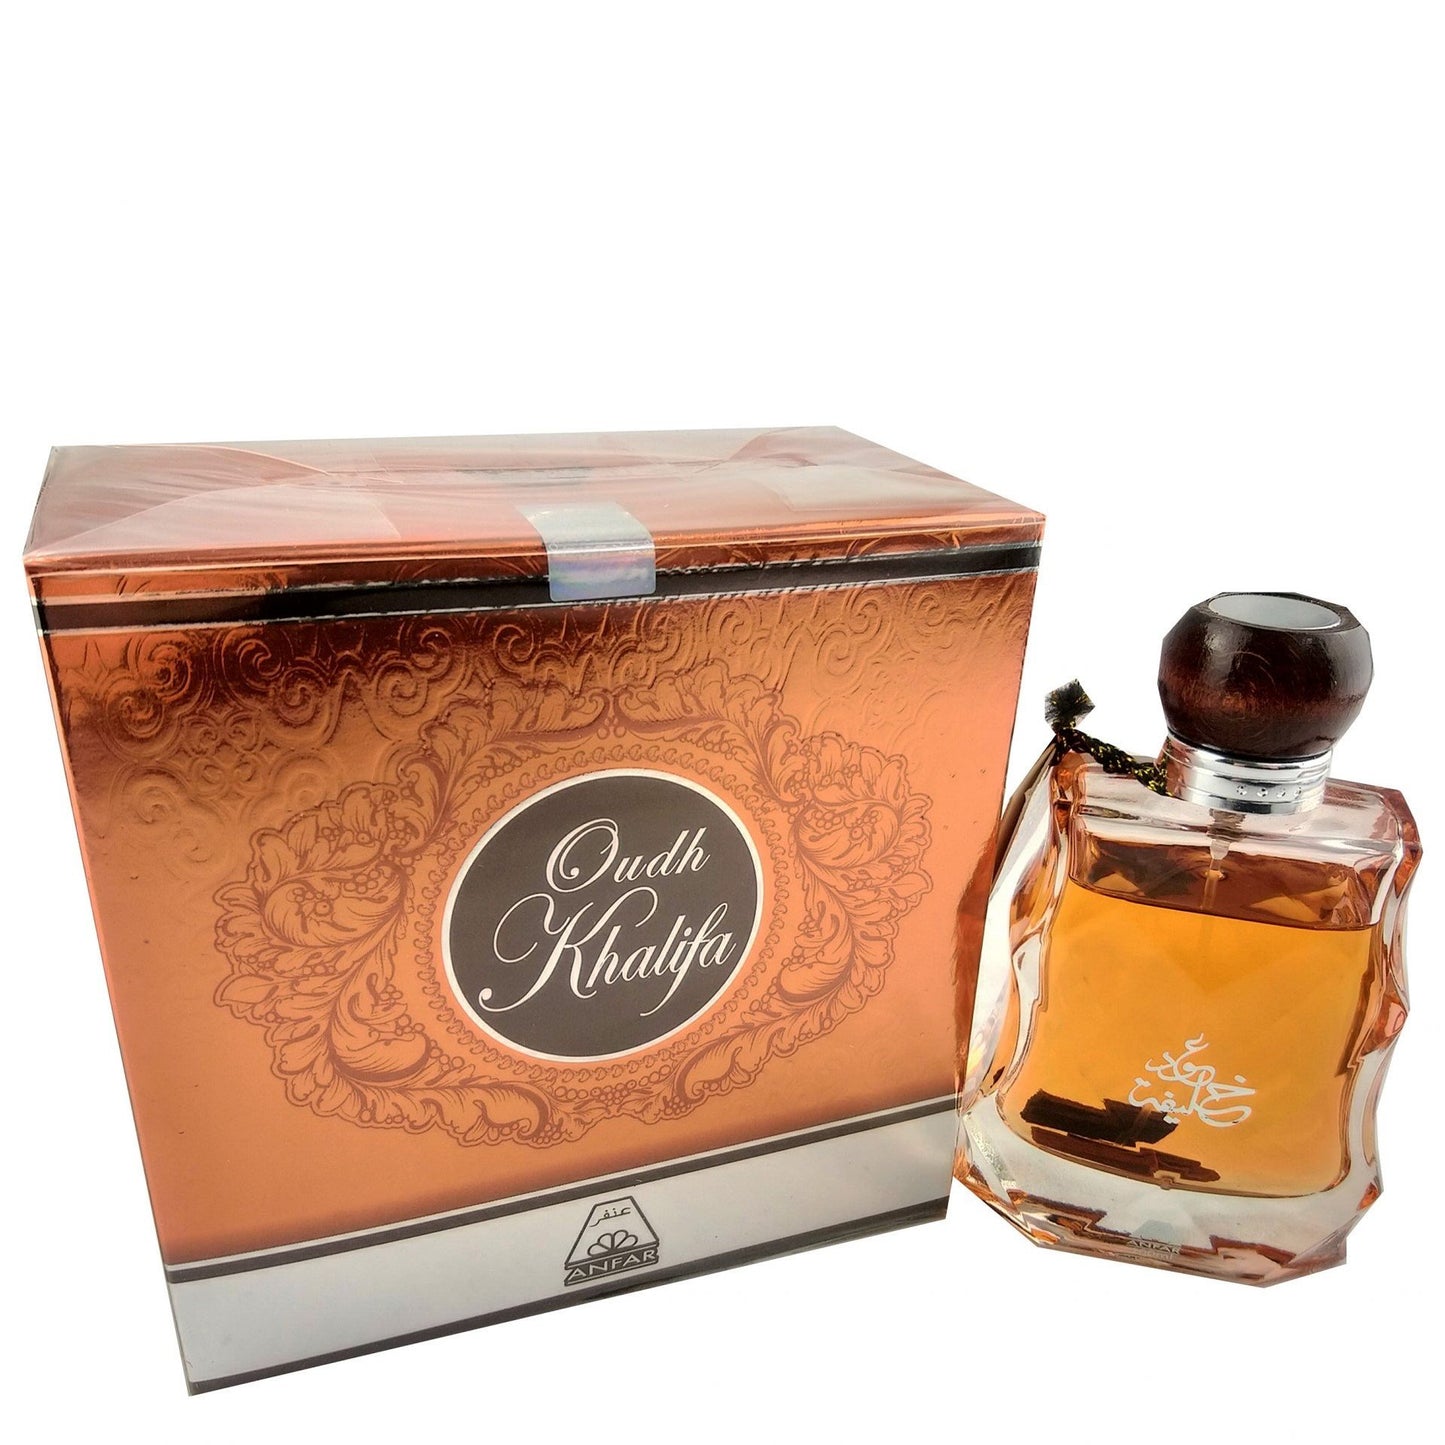 100 ml Woda Perfumowana Oudh Khalifa Orientalny, słodko oud  zapach dla mężczyzn